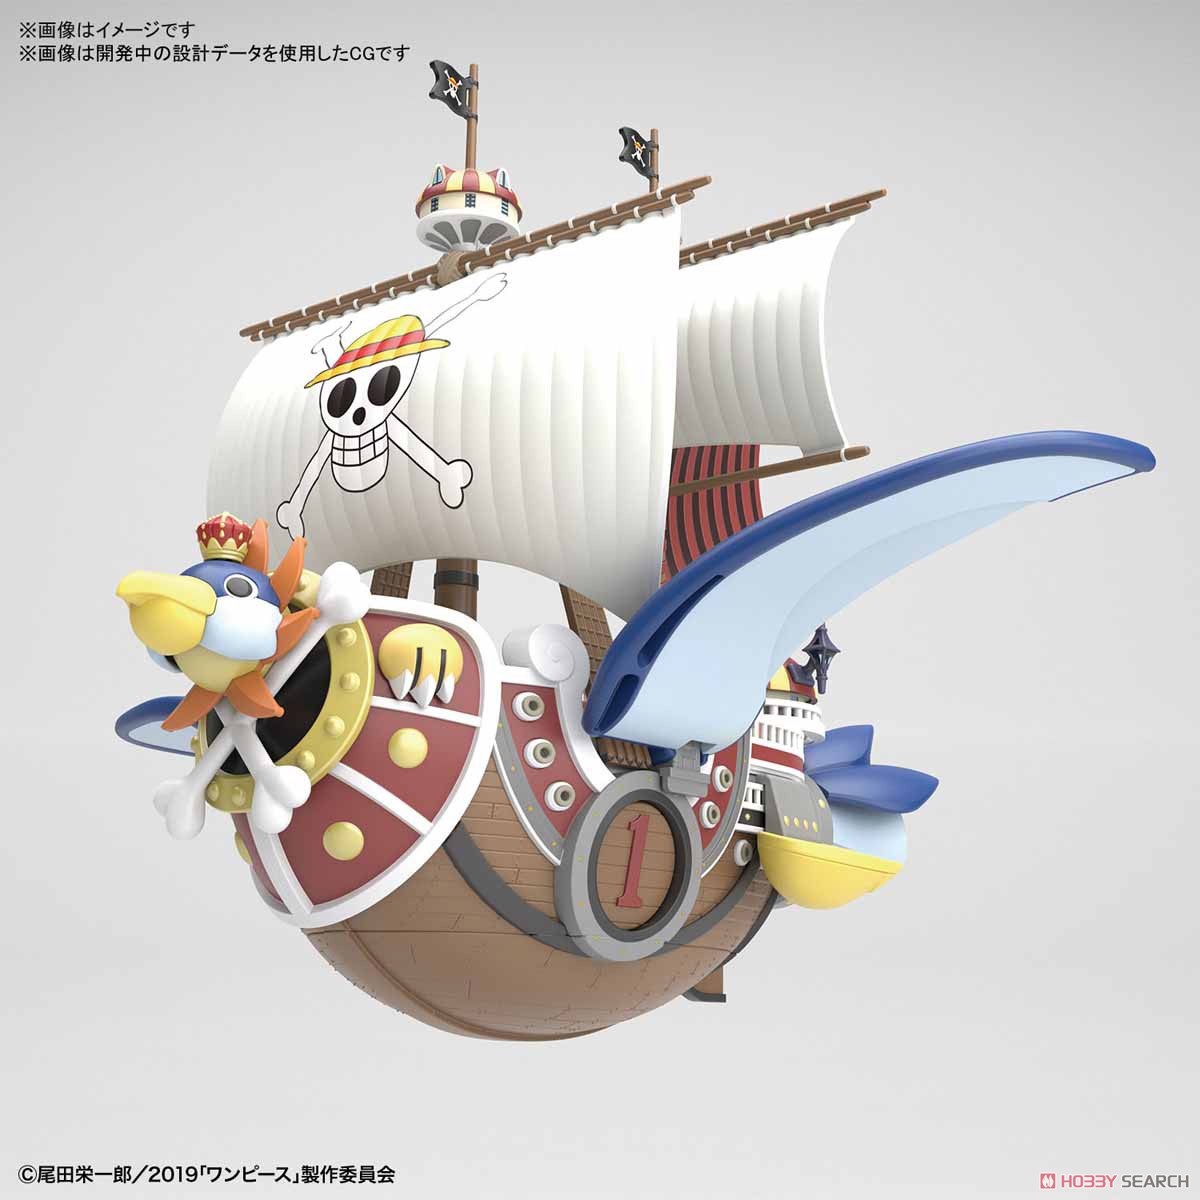 偉大なる船コレクション『サウザンド・サニー号 フライングモデル』ワンピース プラモデル-002